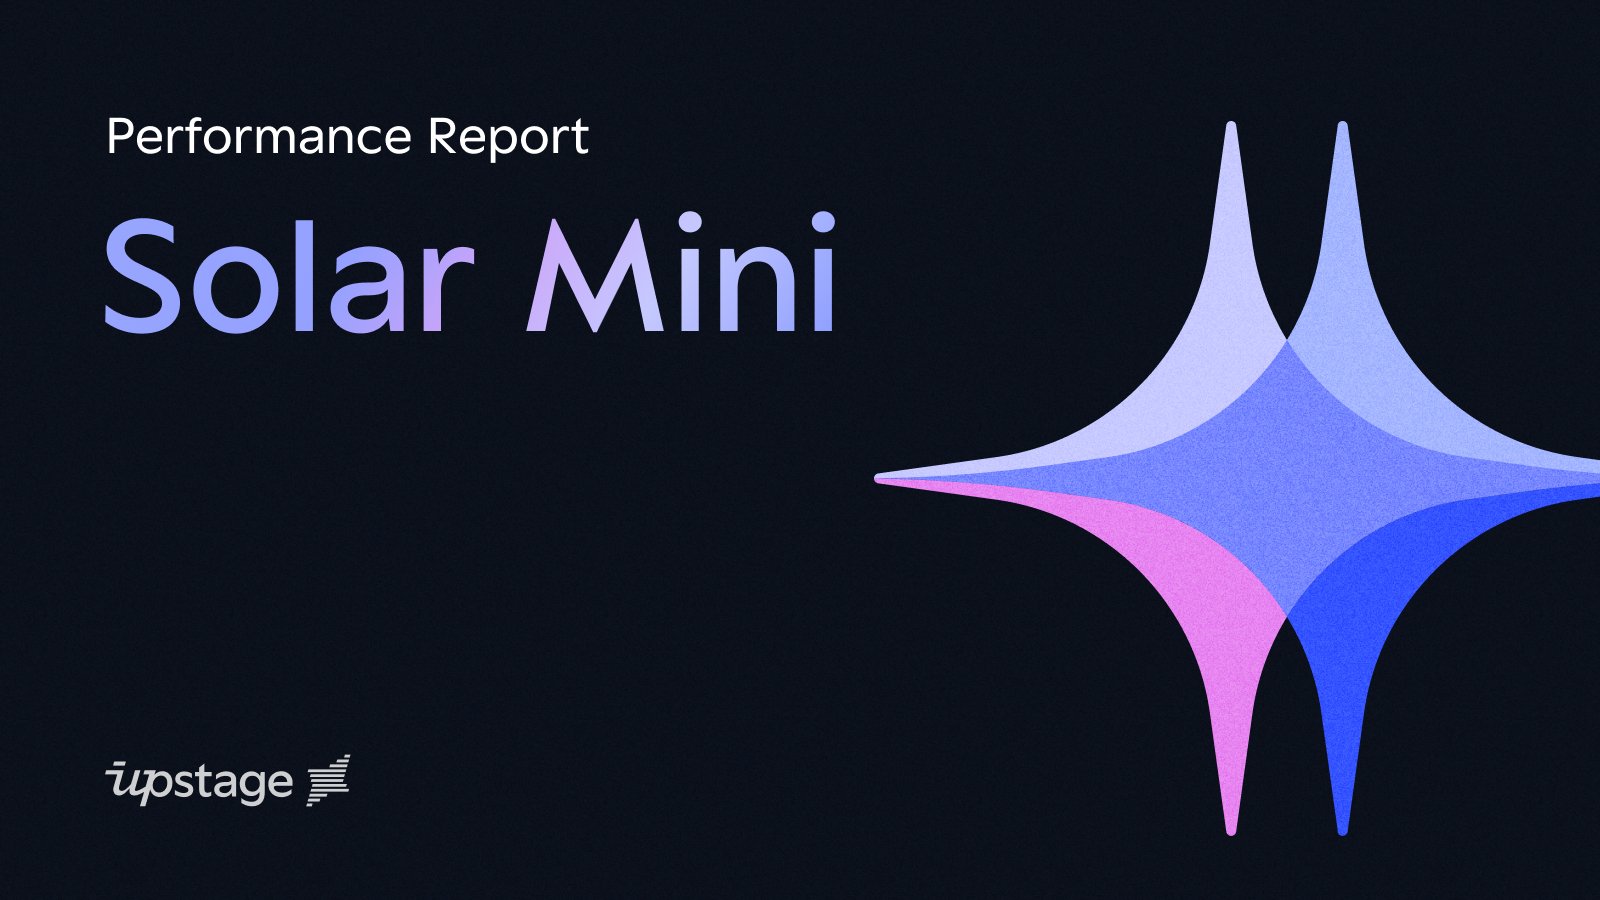 Upstage LLM, ‘Solar Mini’ performance report